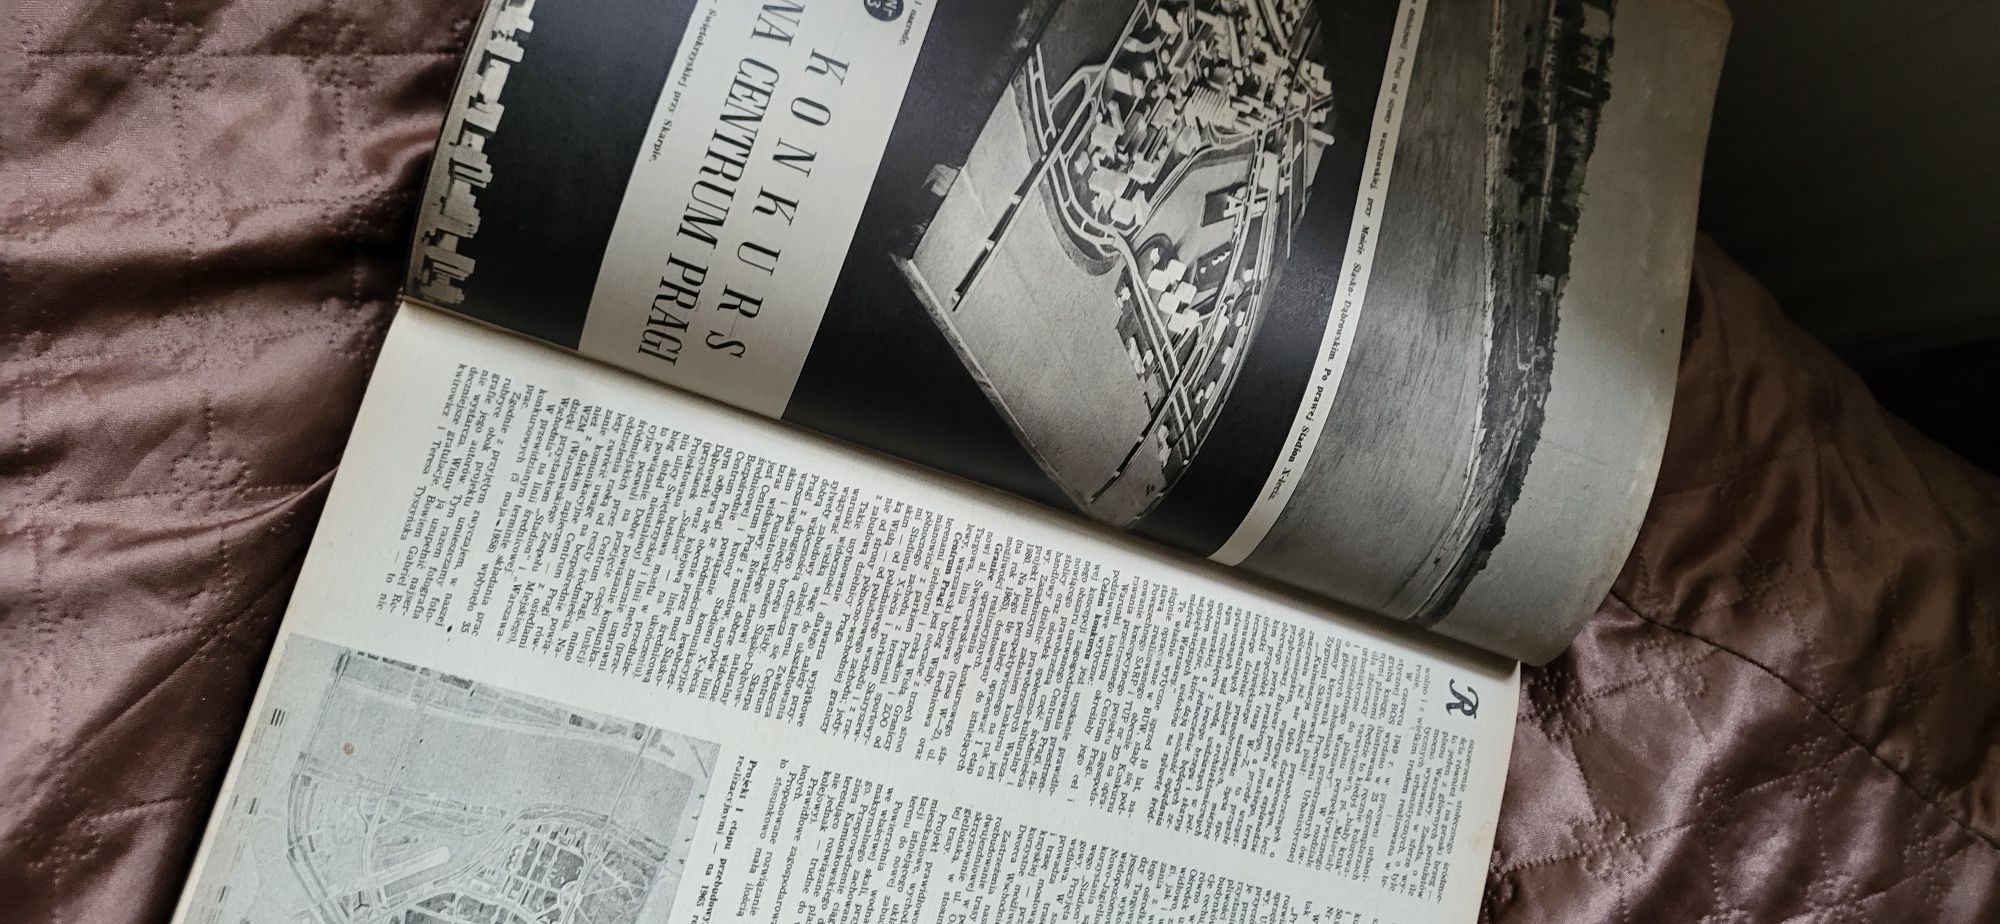 Czasopismo Stolica rocznik 1958 całość w jednej okładce.